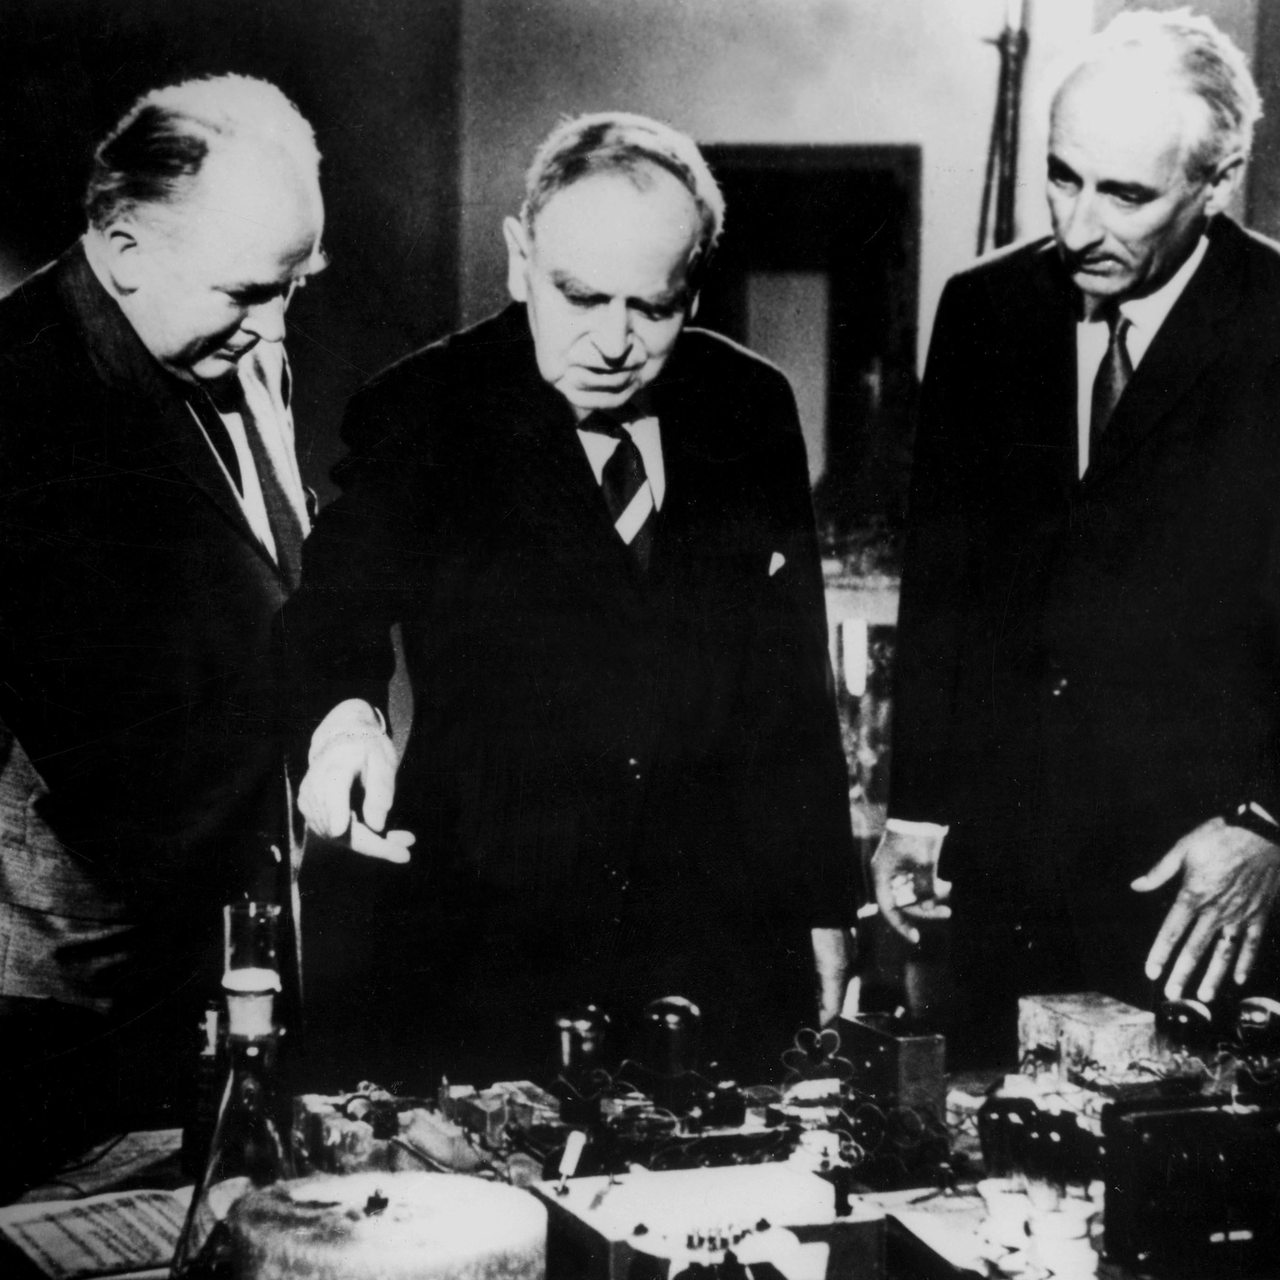 Fritz Straßmann und Otto Hahn führen einem Mann an einem Modell die Kernspaltung vor (Archivbild)